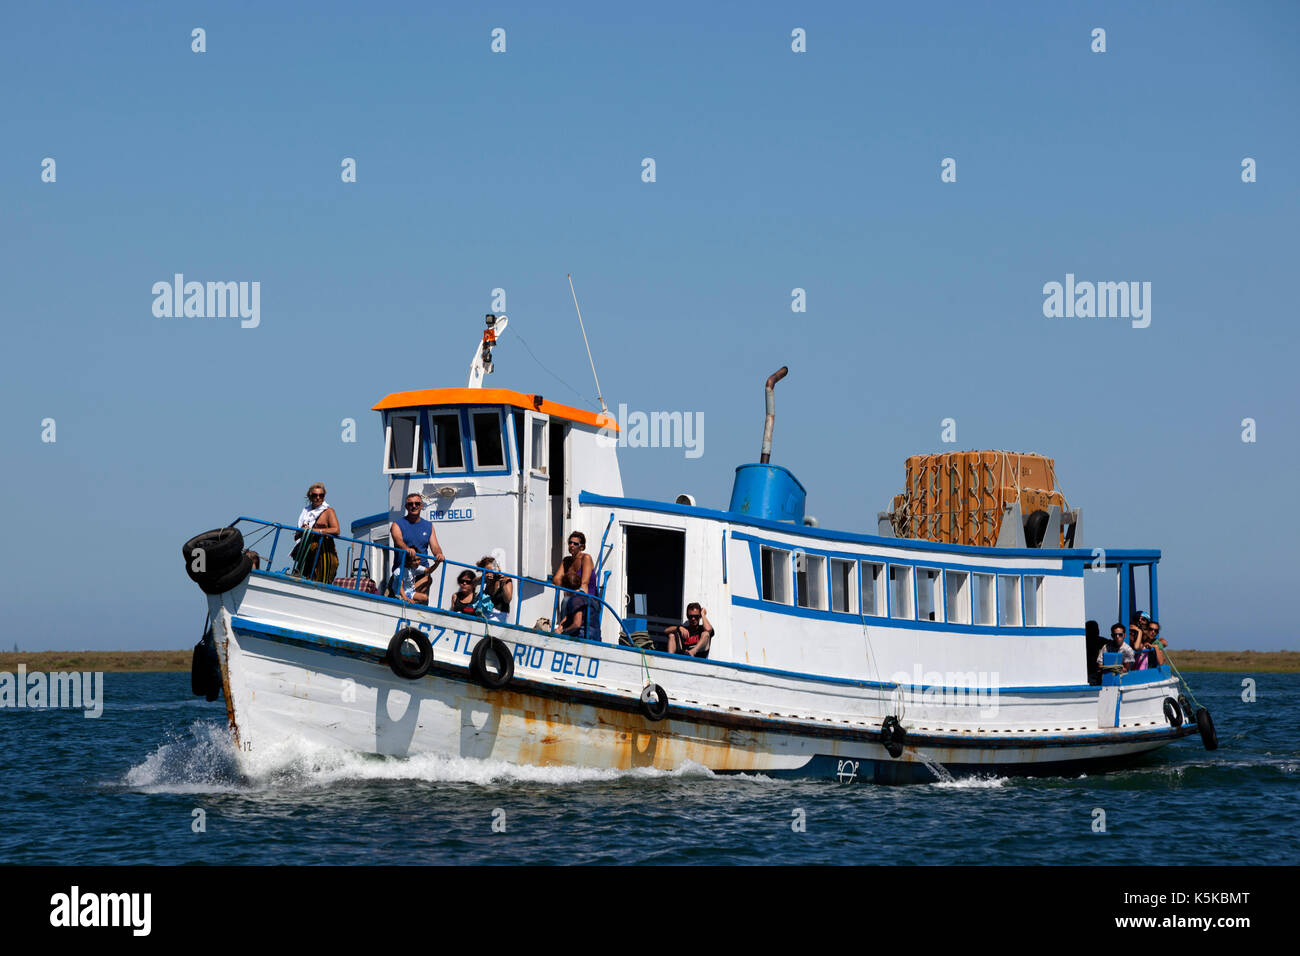 Excursion boat in the Ria Formosa Nature Park, Faro, Portugal Stock Photo